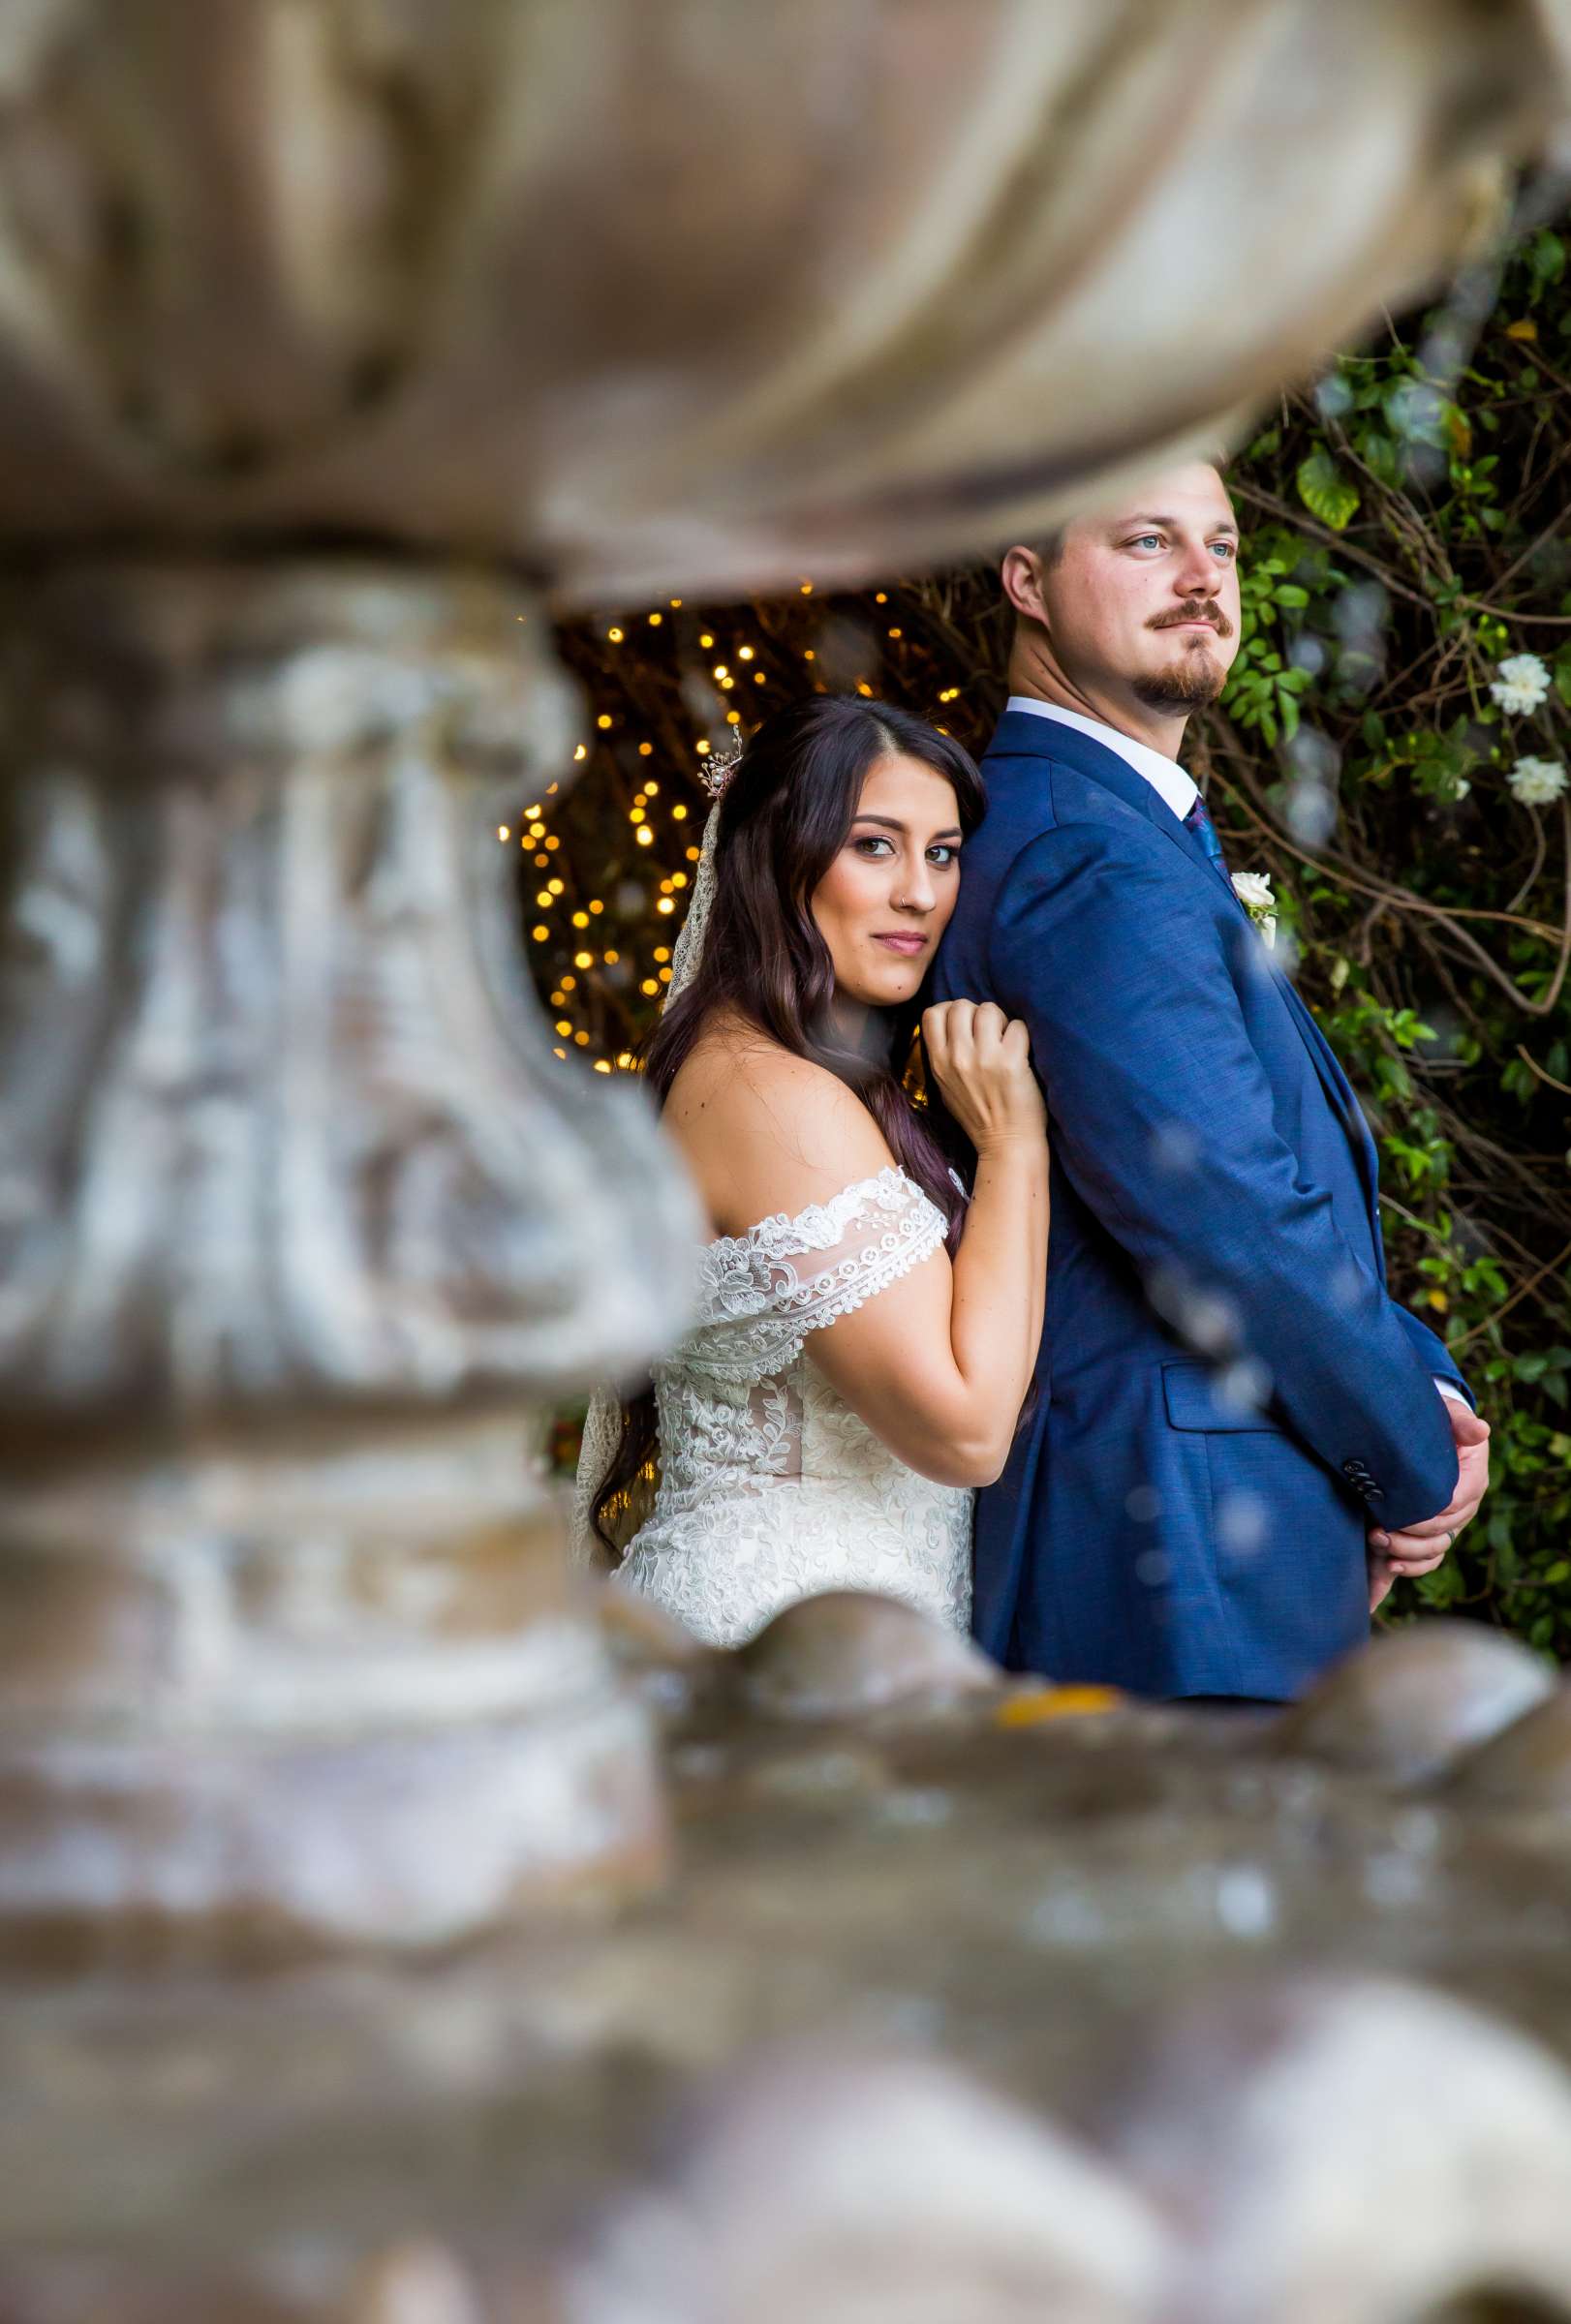 Twin Oaks House & Gardens Wedding Estate Wedding, Stephanie and Ilija Wedding Photo #98 by True Photography